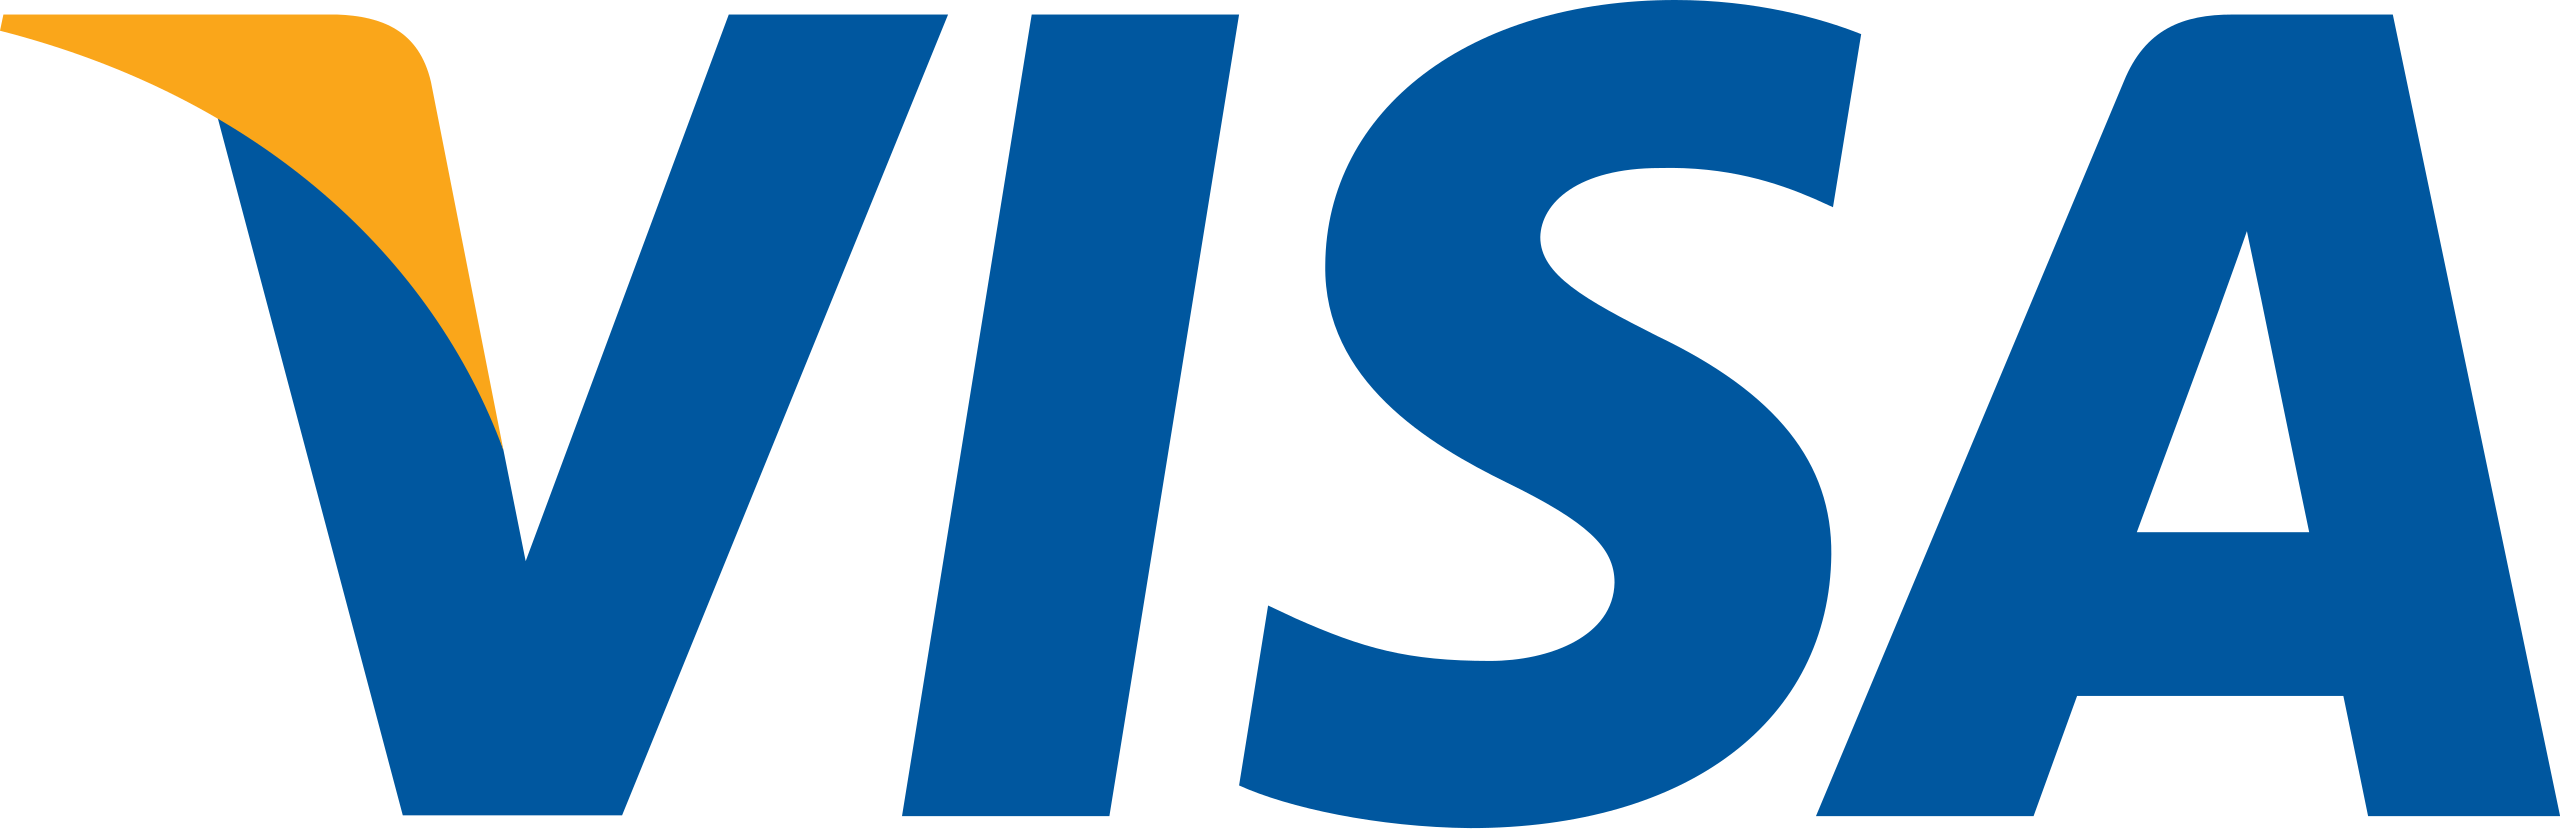 visa bank logo